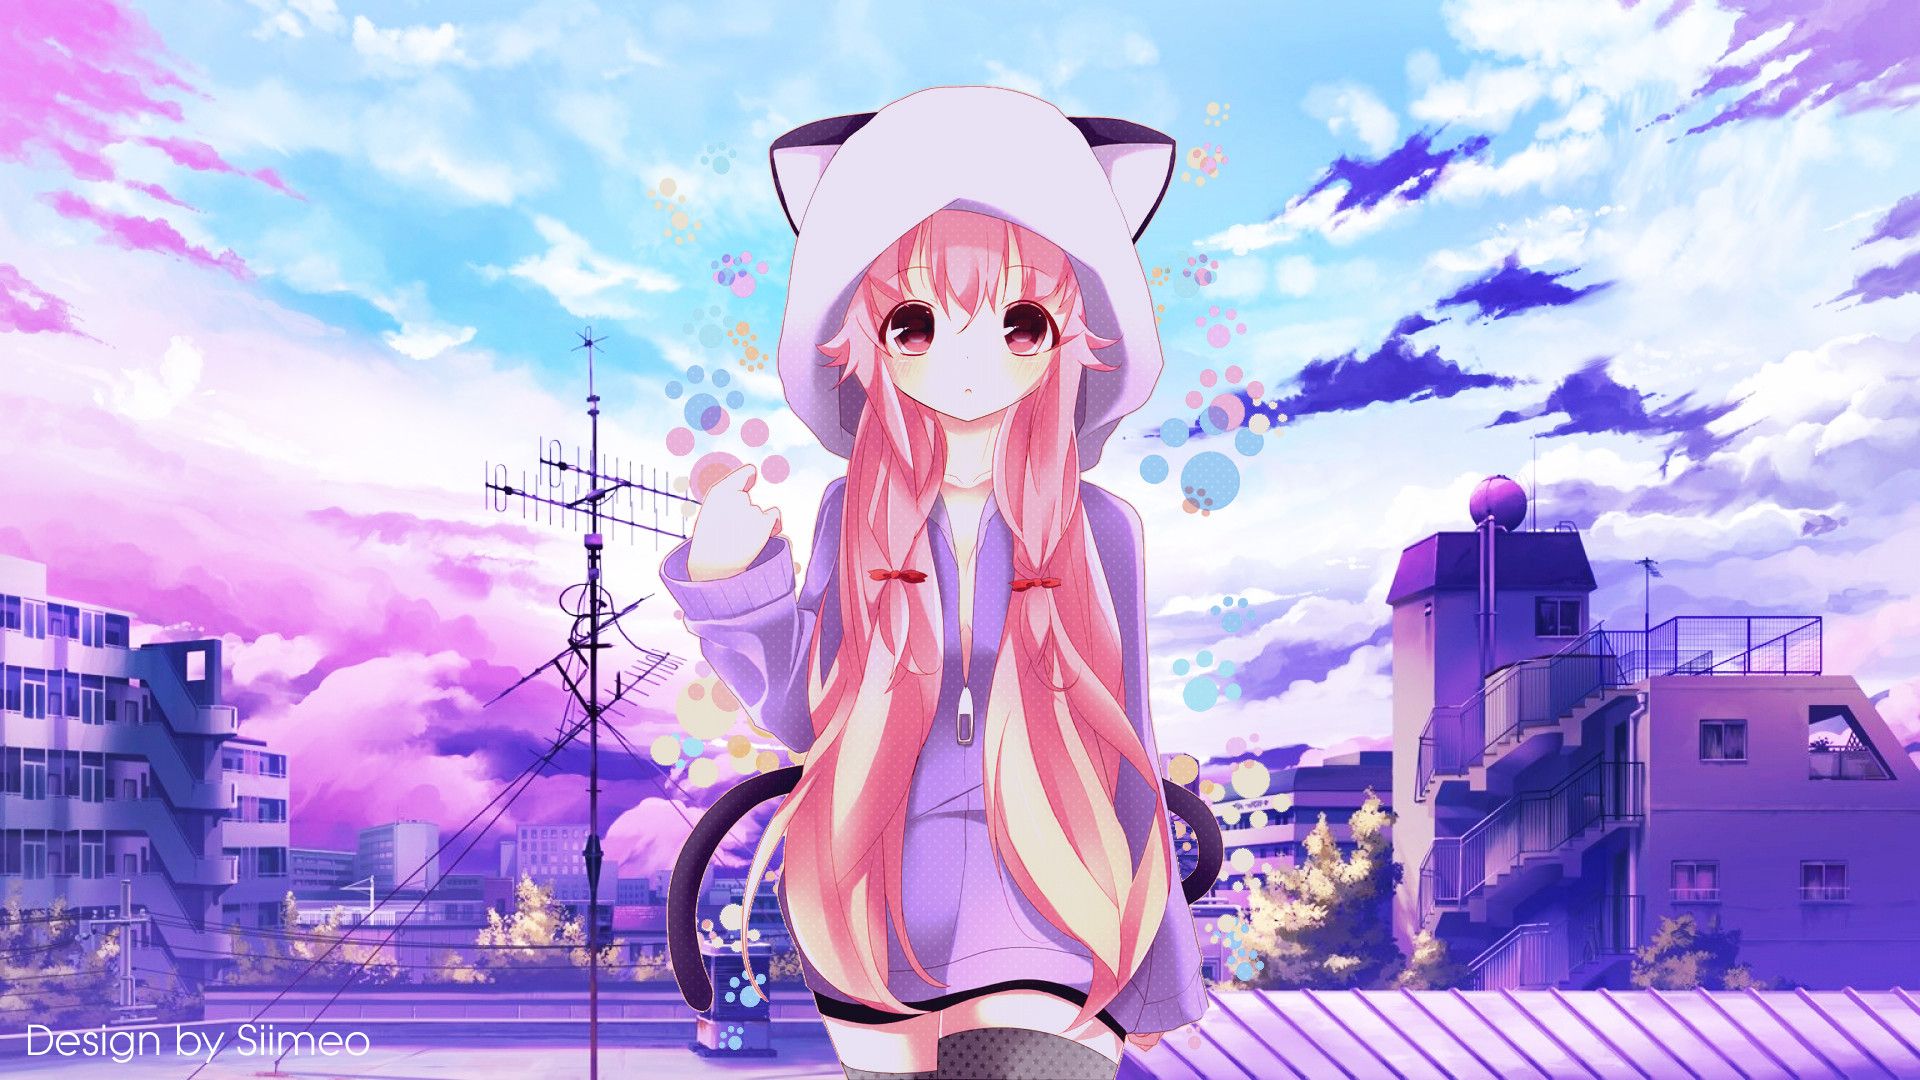 Hình nền Nền Một Cô Gái Anime đang đeo Kính Và Nói Chuyện Nền Kính Mắt 3d  ảnh Chụp ảnh Hd Background Vector để tải xuống miễn phí  Pngtree